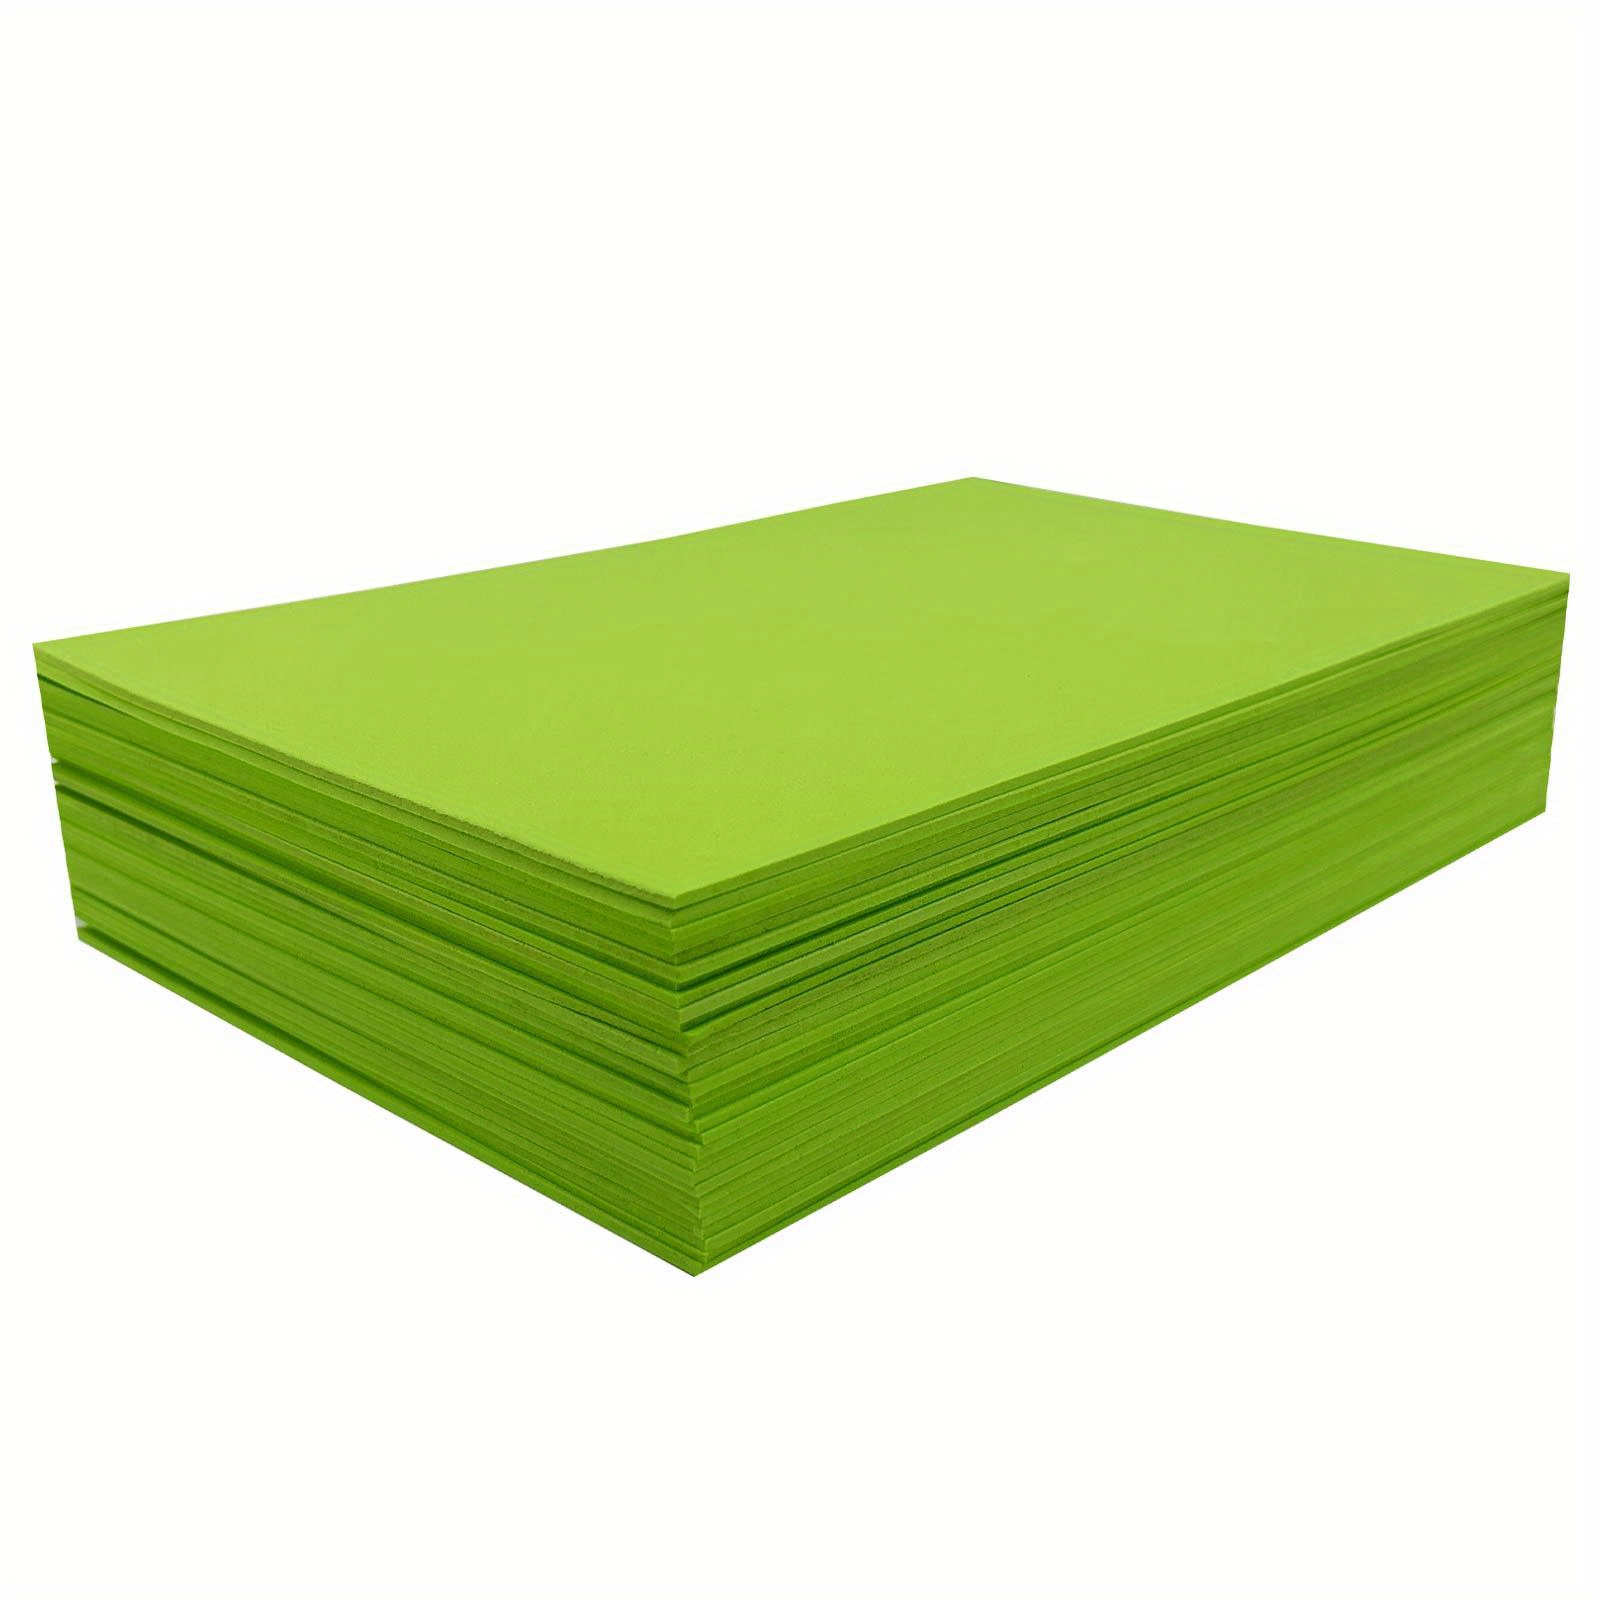 TEHAUX 20 Peças De Papel De Esponja Colorido Papel De Origami Para Artes E  Ofícios Para Materiais De Fabricação De Cartões De Espuma De Costura Folha